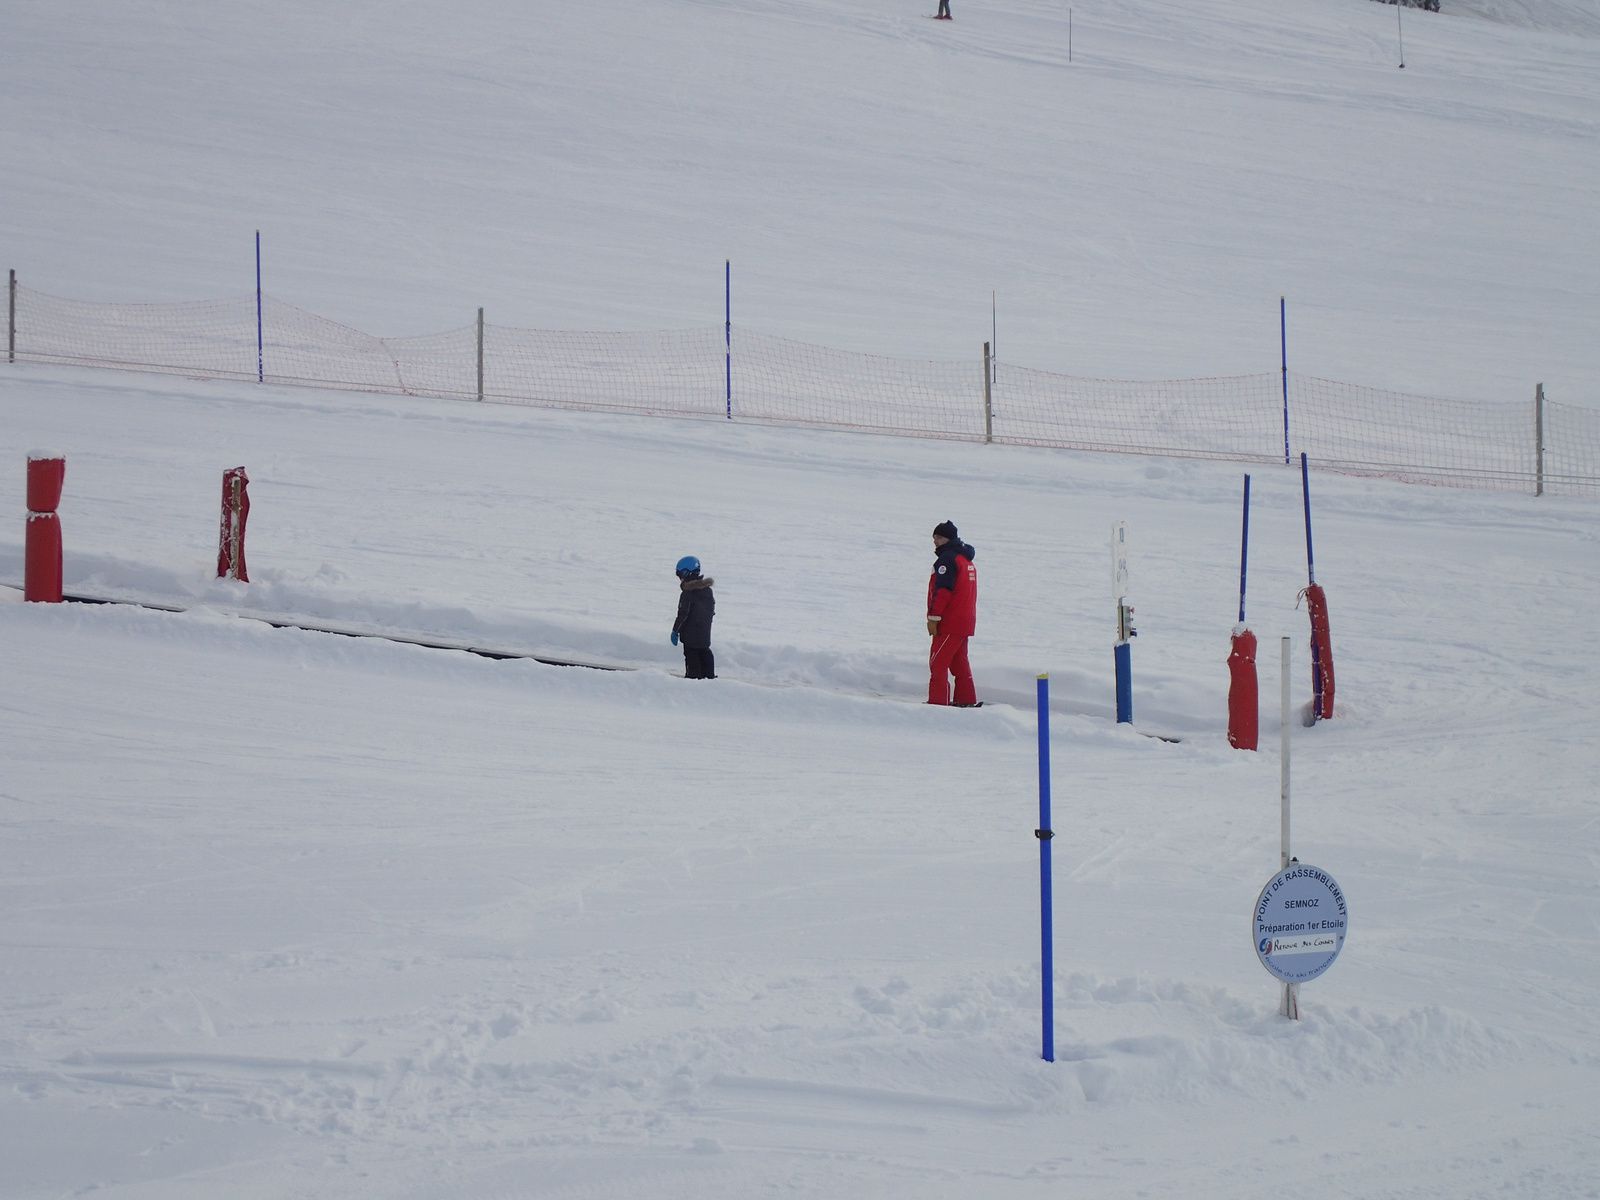 Semnoz: Première sortie ski Allan